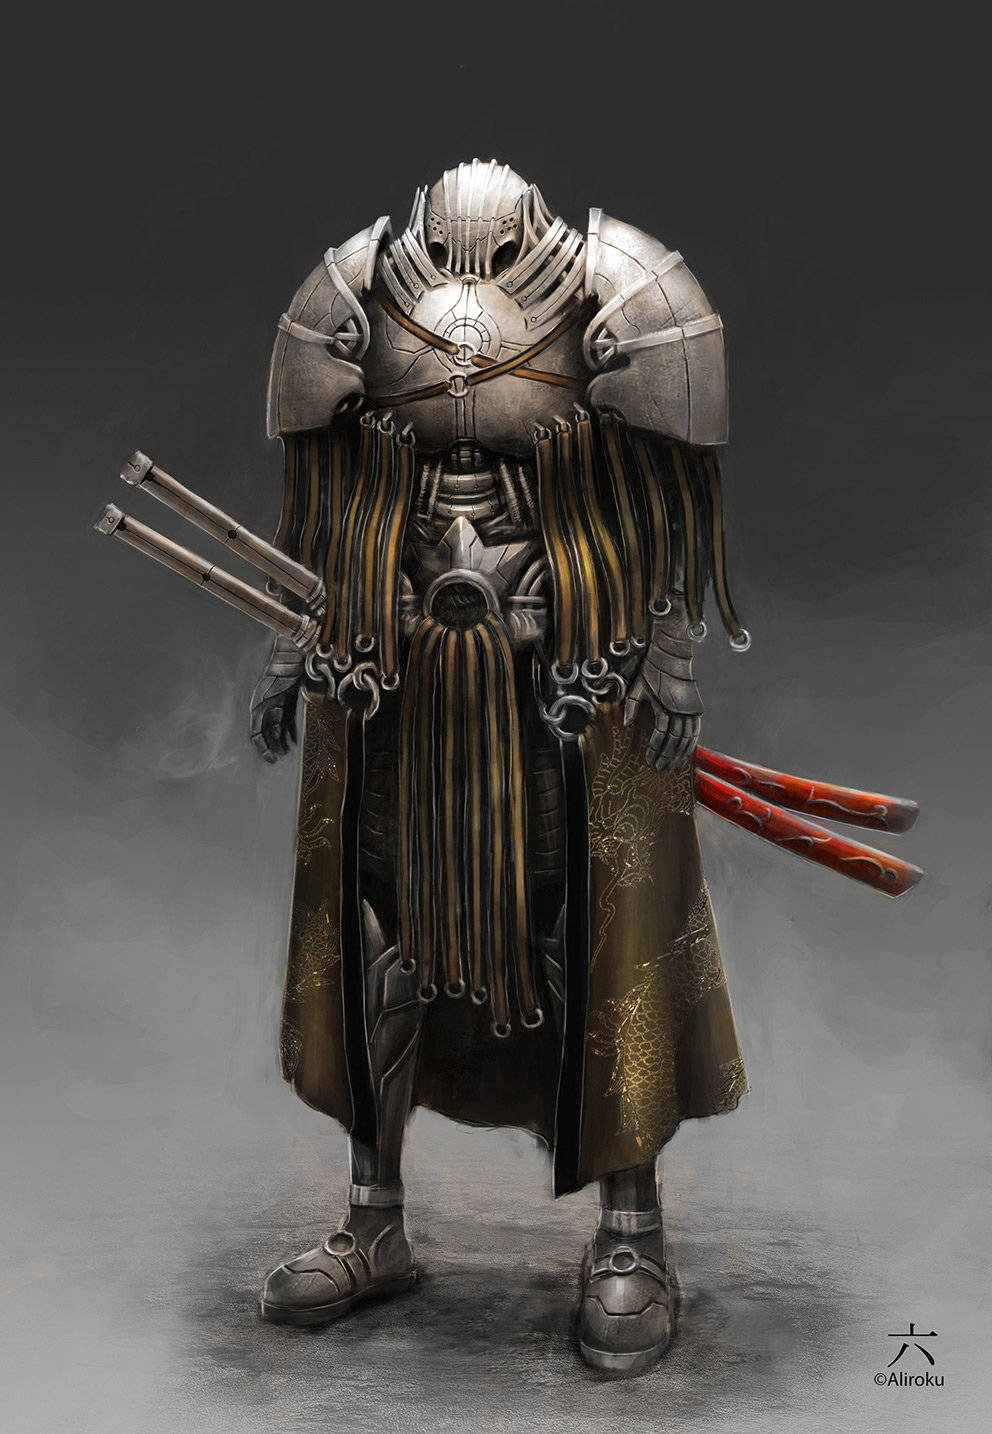 Enmäktig Samuraj Avbildas I Denna Krigarkonst. Wallpaper